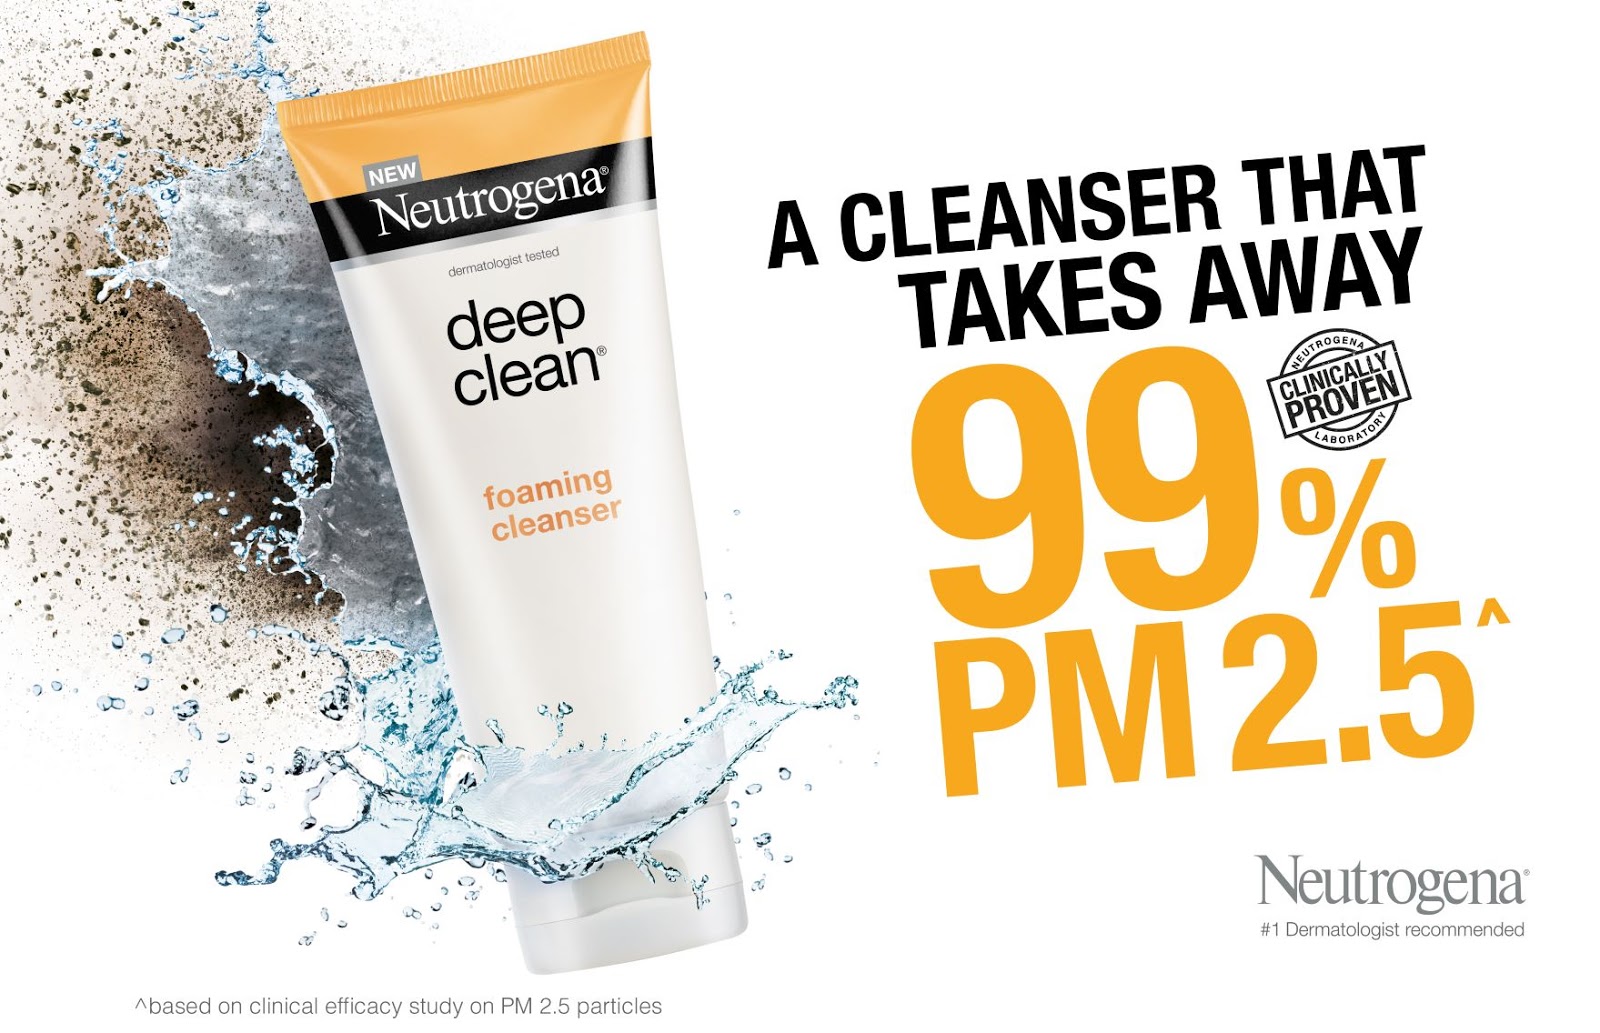 Neutrogena Foam Cleanser. Neutrogena Foaming Cleanser. Deep clean. Pure deep cleansing foam